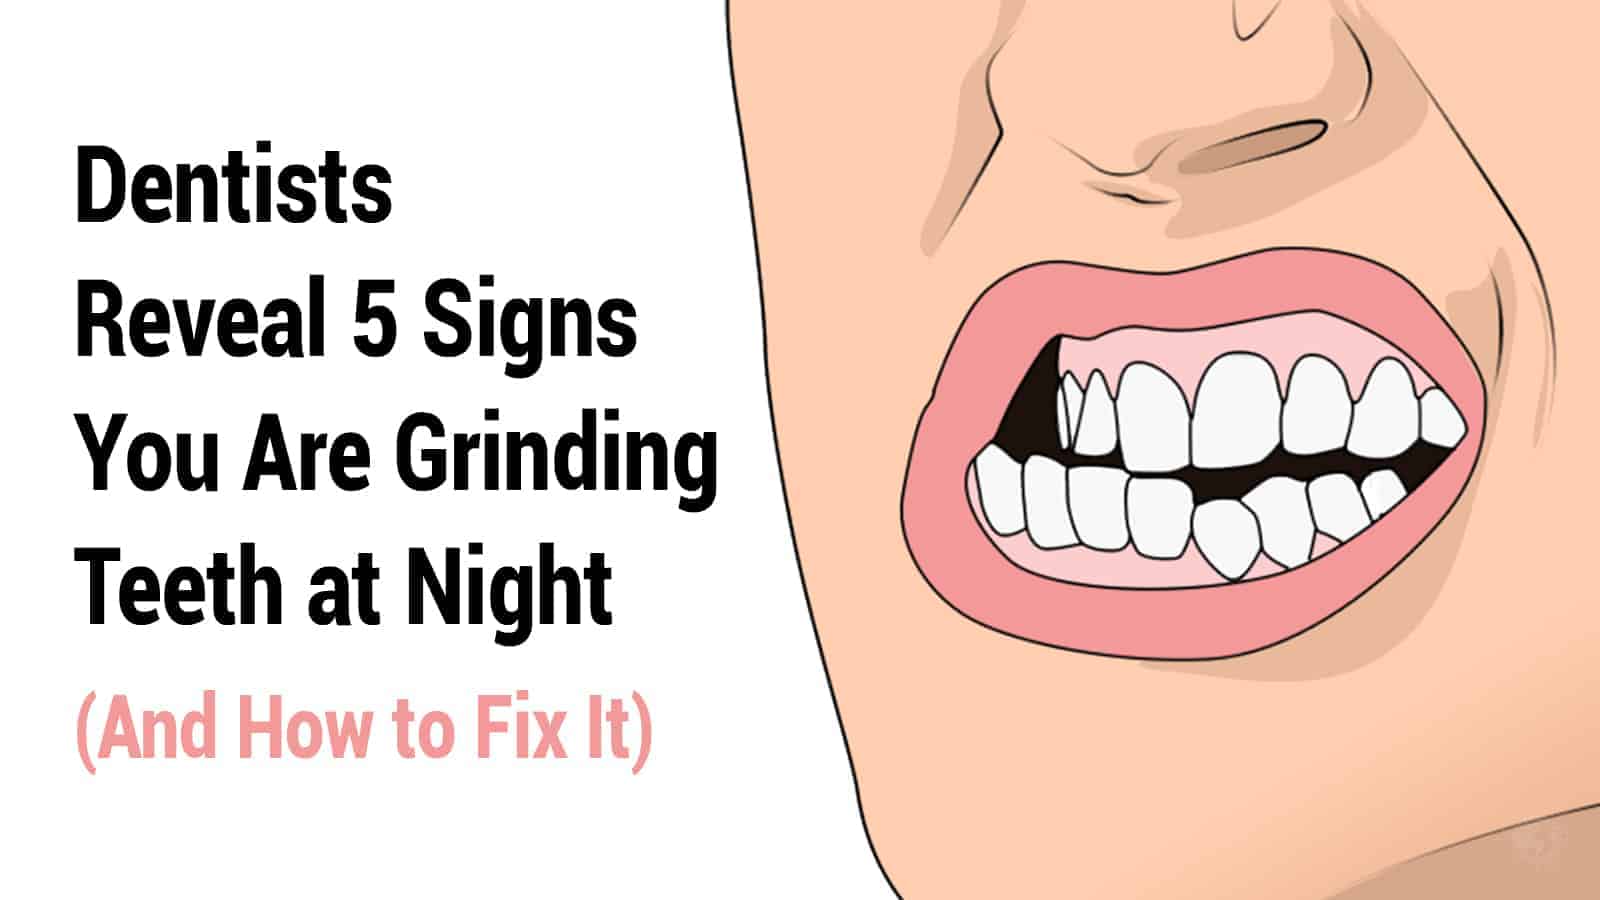 grinding teeth